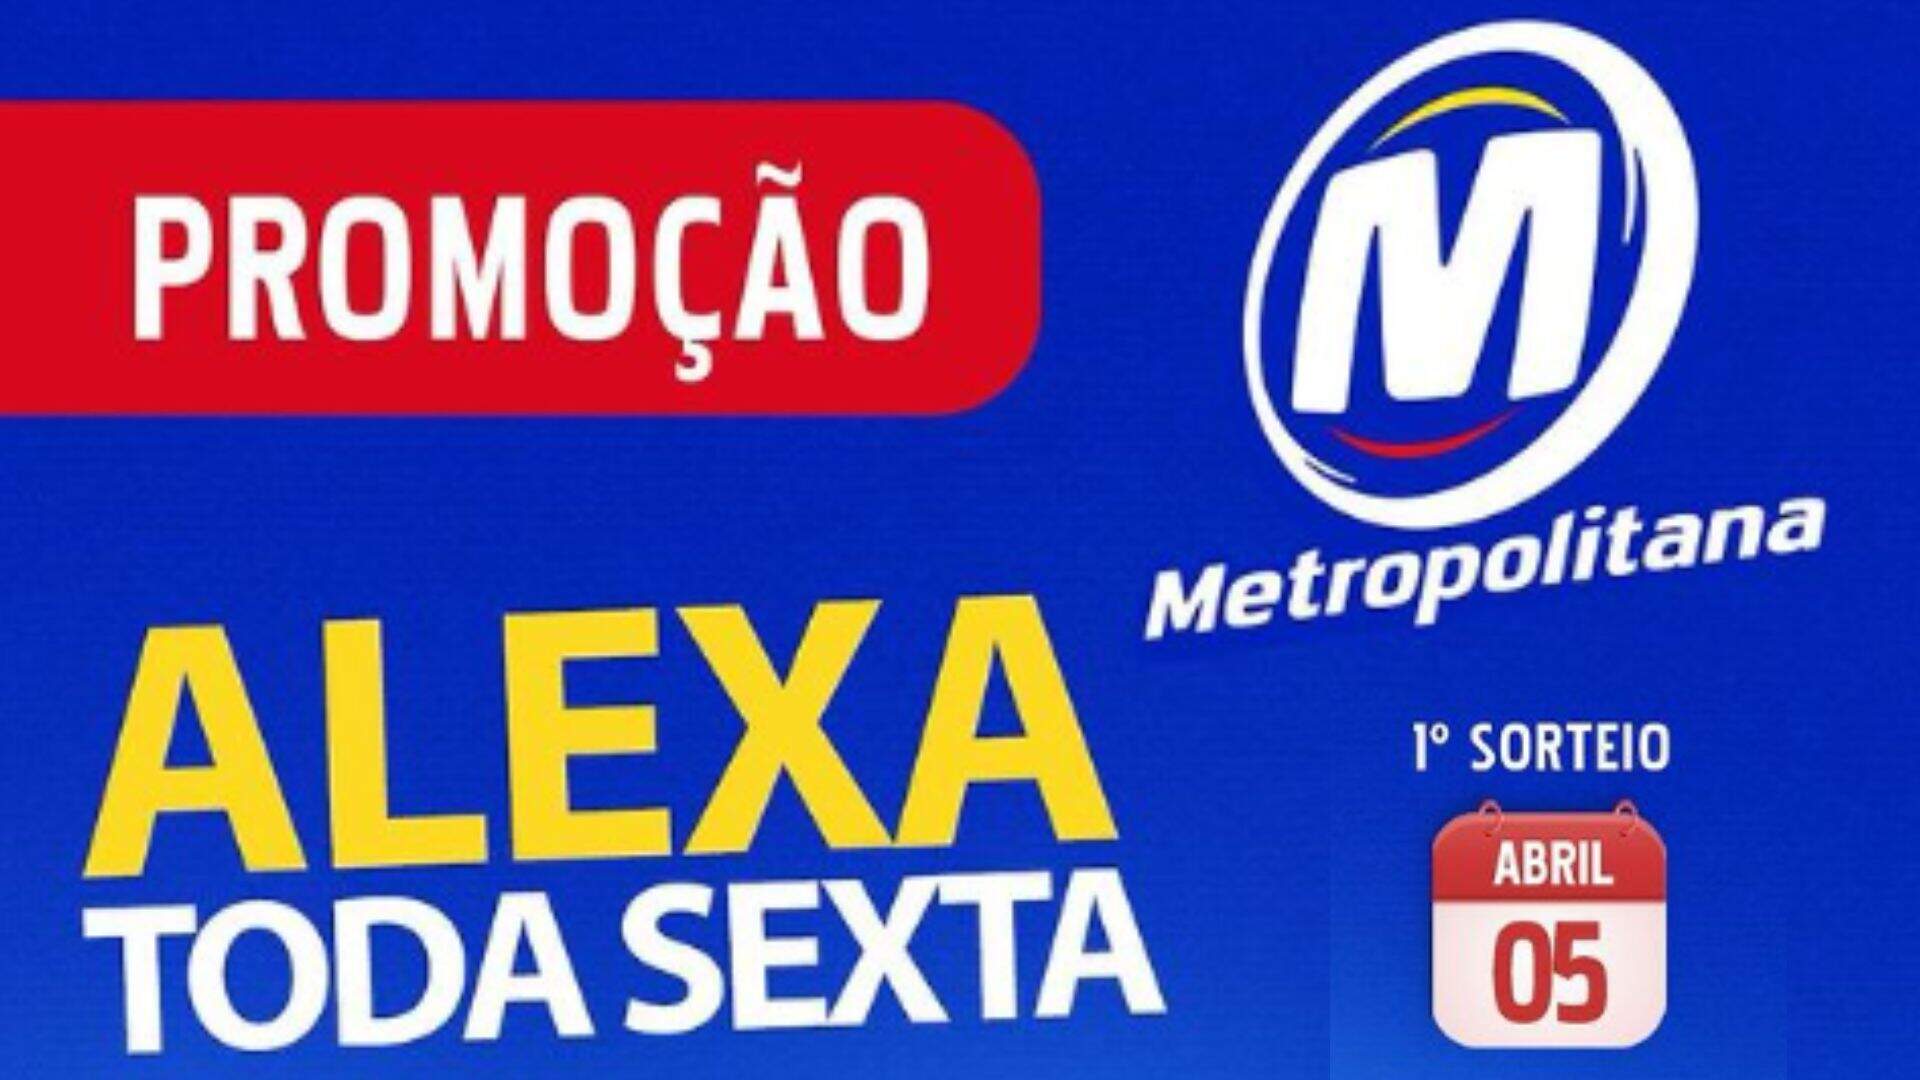 [ENCERRADA] Promoção: CAÇADA ALEXA TODA SEXTA NA METROPOLITANA - Metropolitana FM